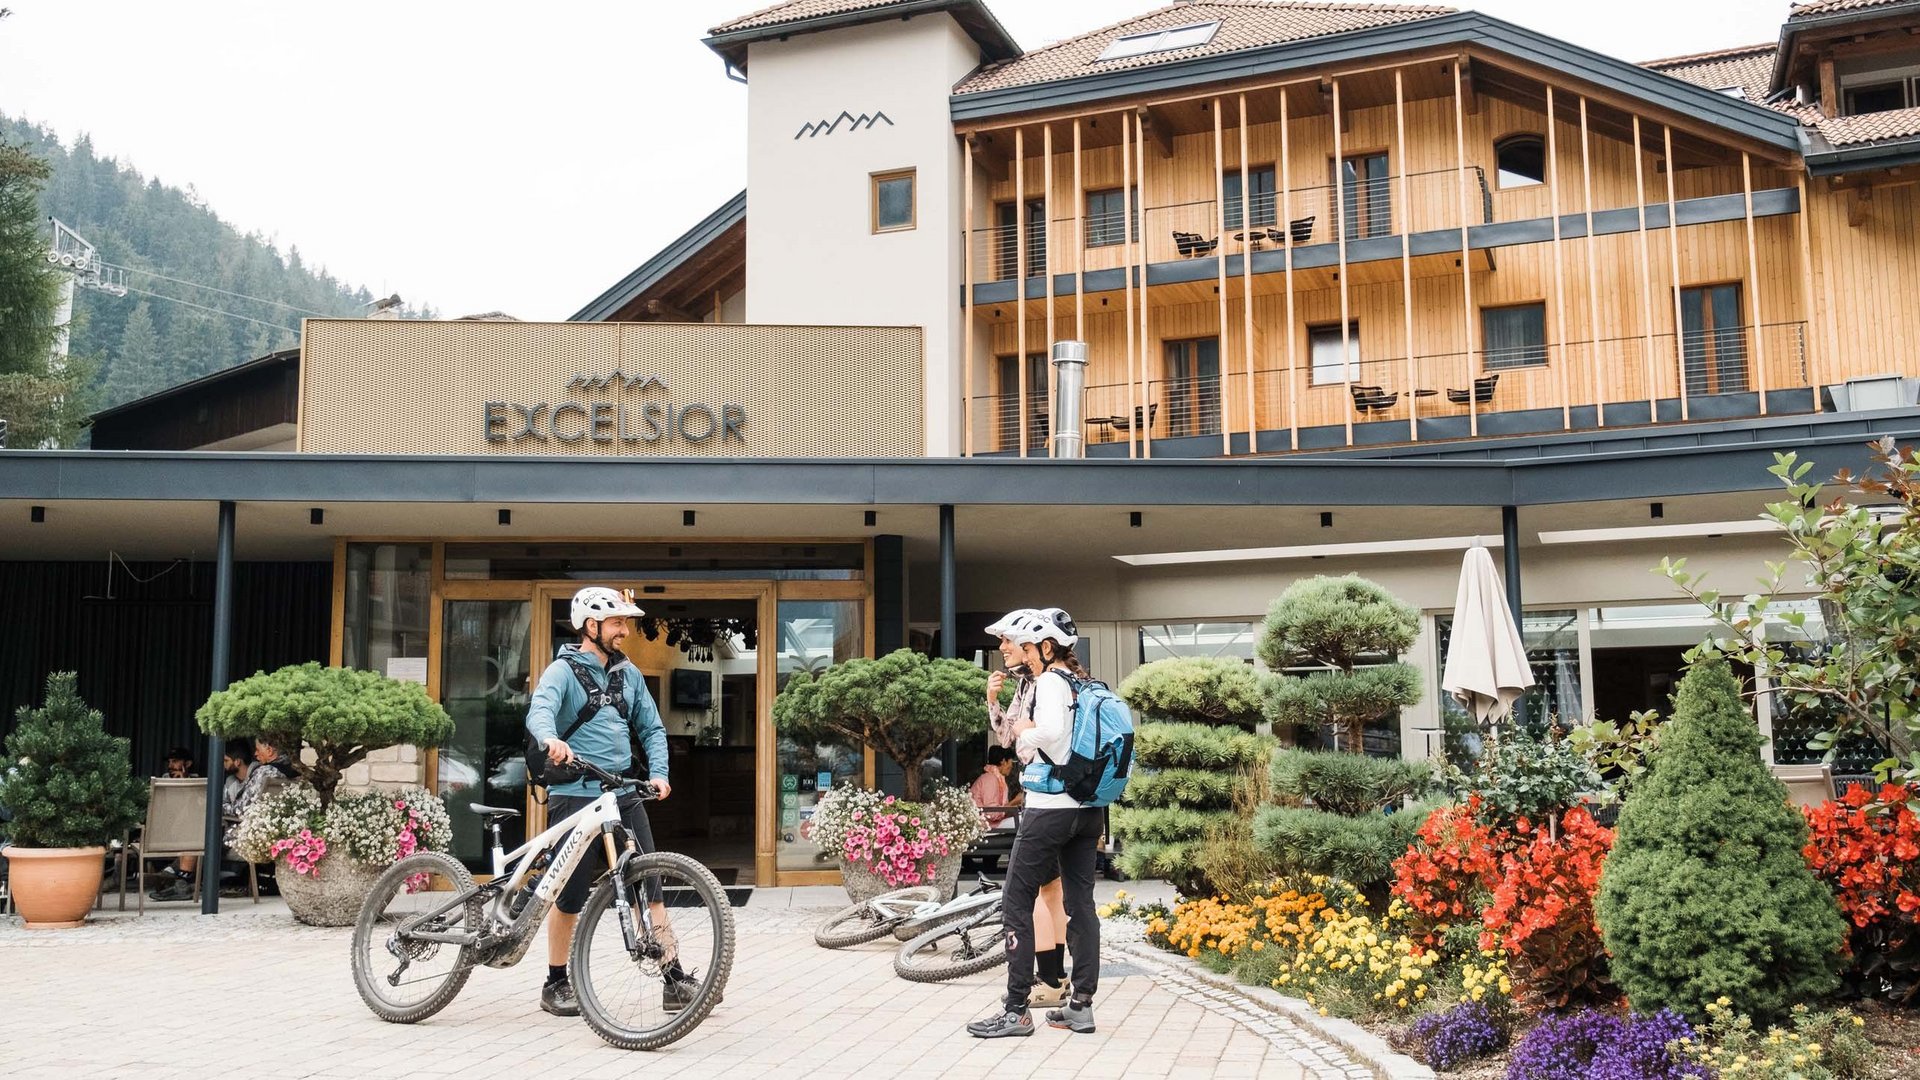 Excelsior: noleggio bici a San Vigilio di Marebbe